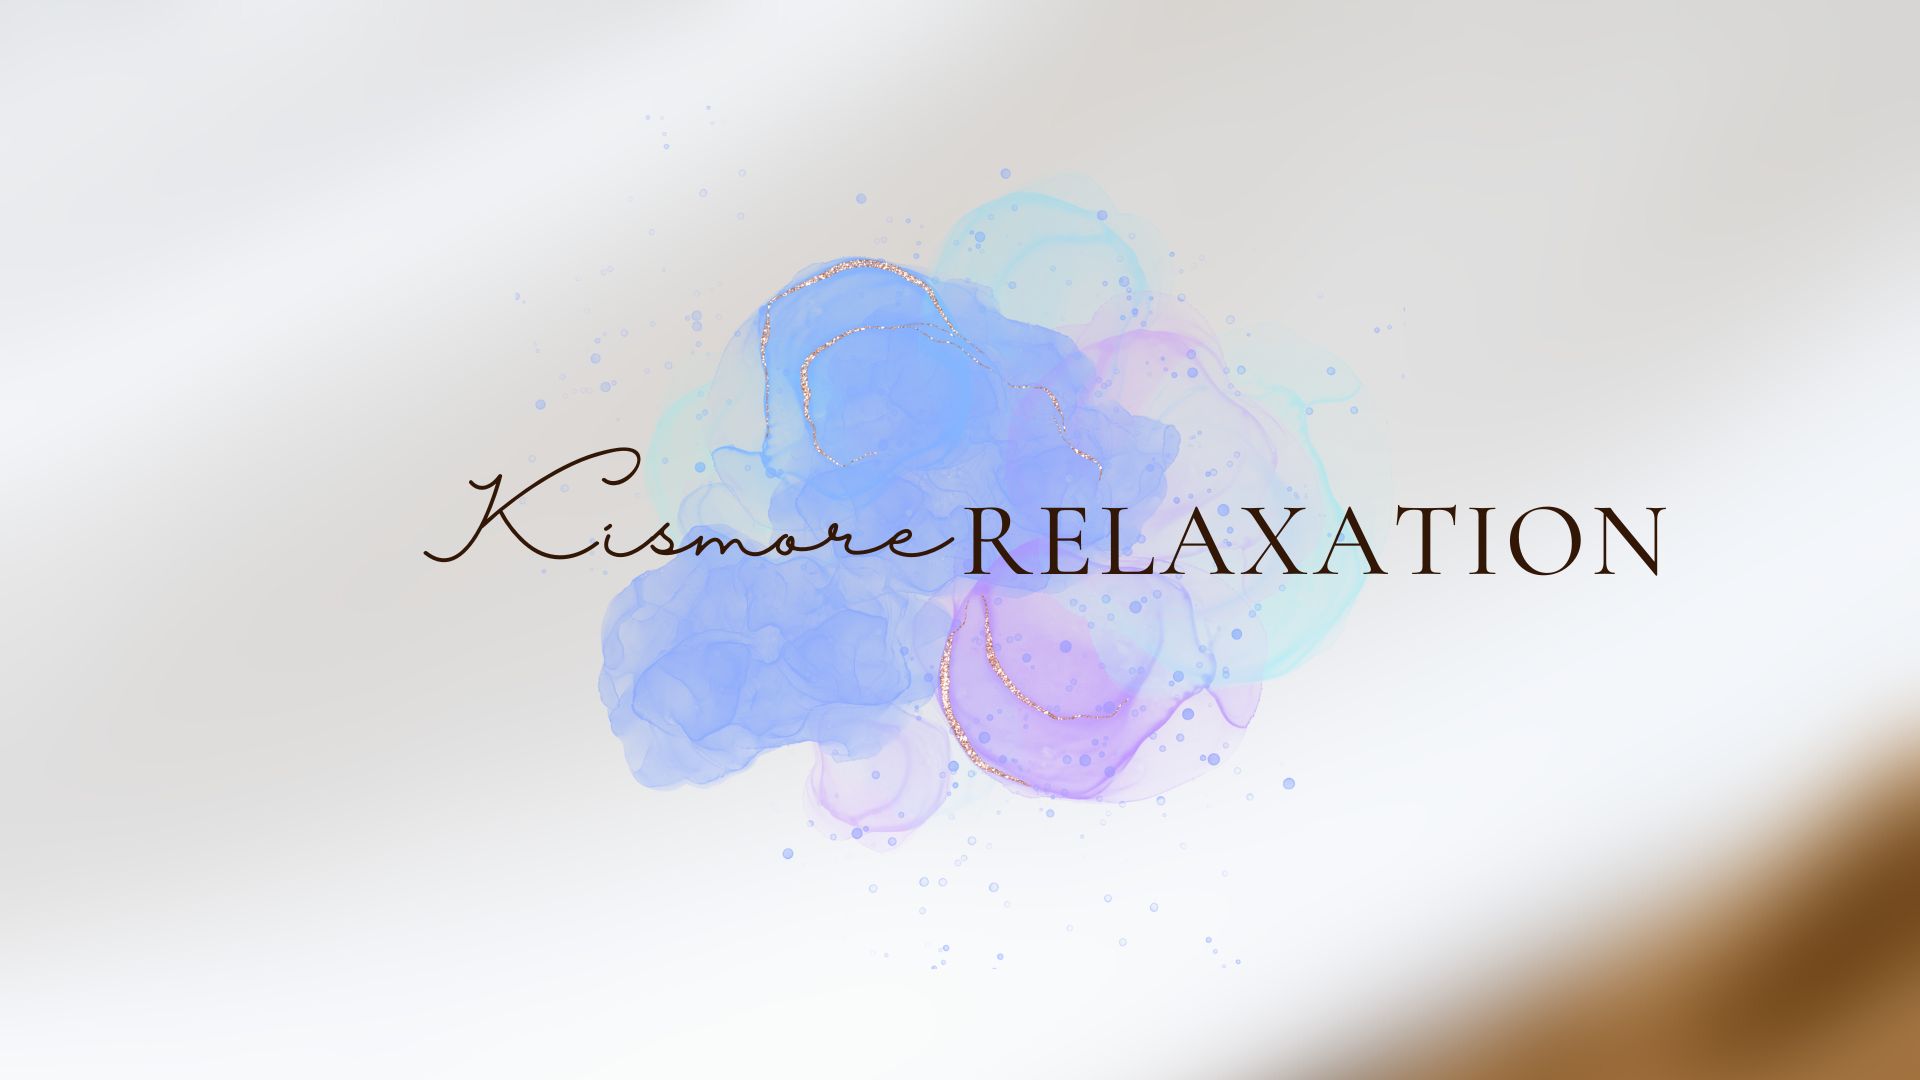 Kismore Relaxation